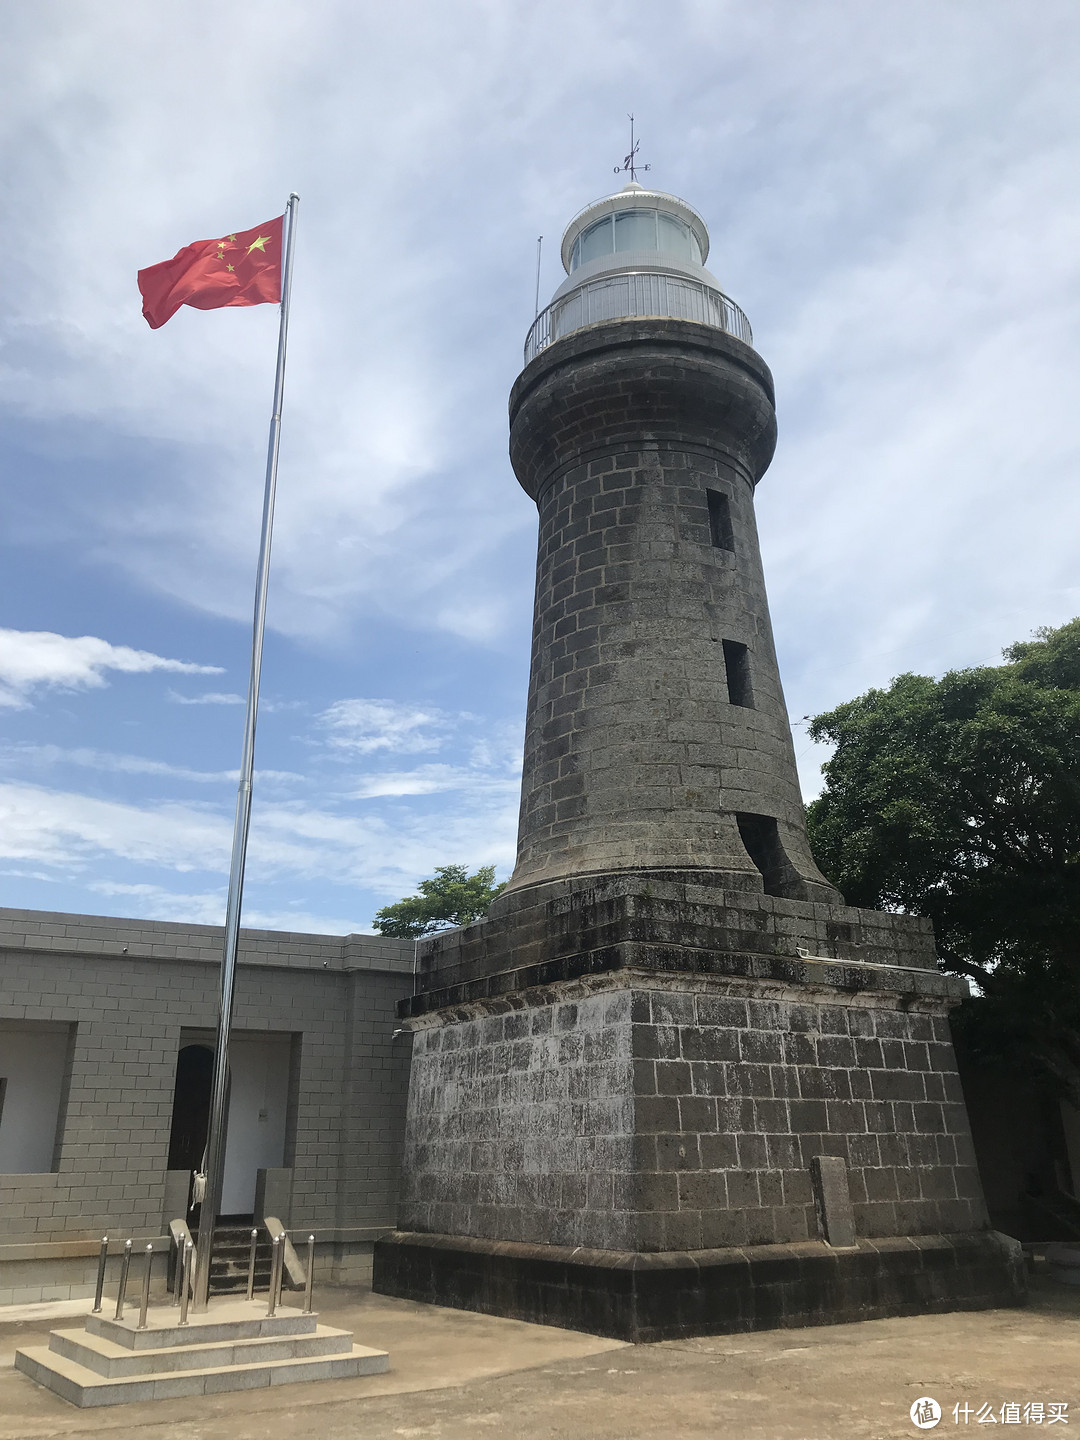 法国人在岛上建立的灯塔，如今红旗飘扬。